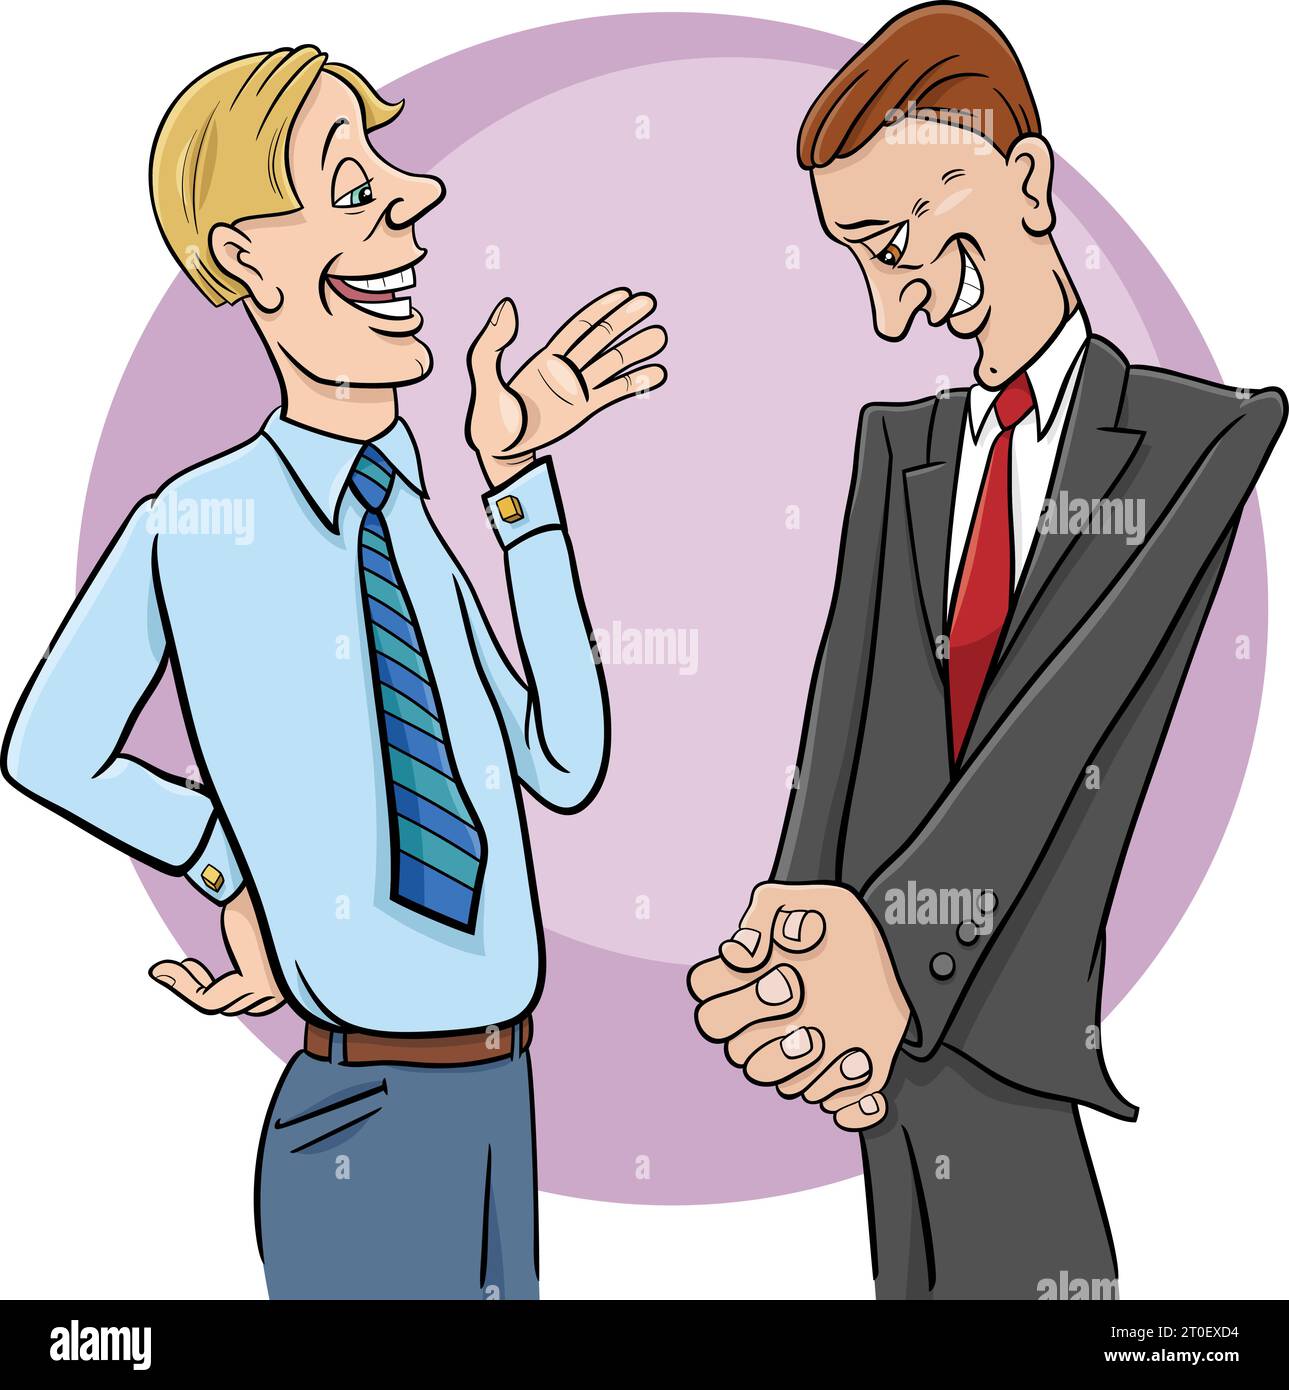 Illustration de dessin animé de deux avocats ou hommes d'affaires discutant ou négociant Illustration de Vecteur